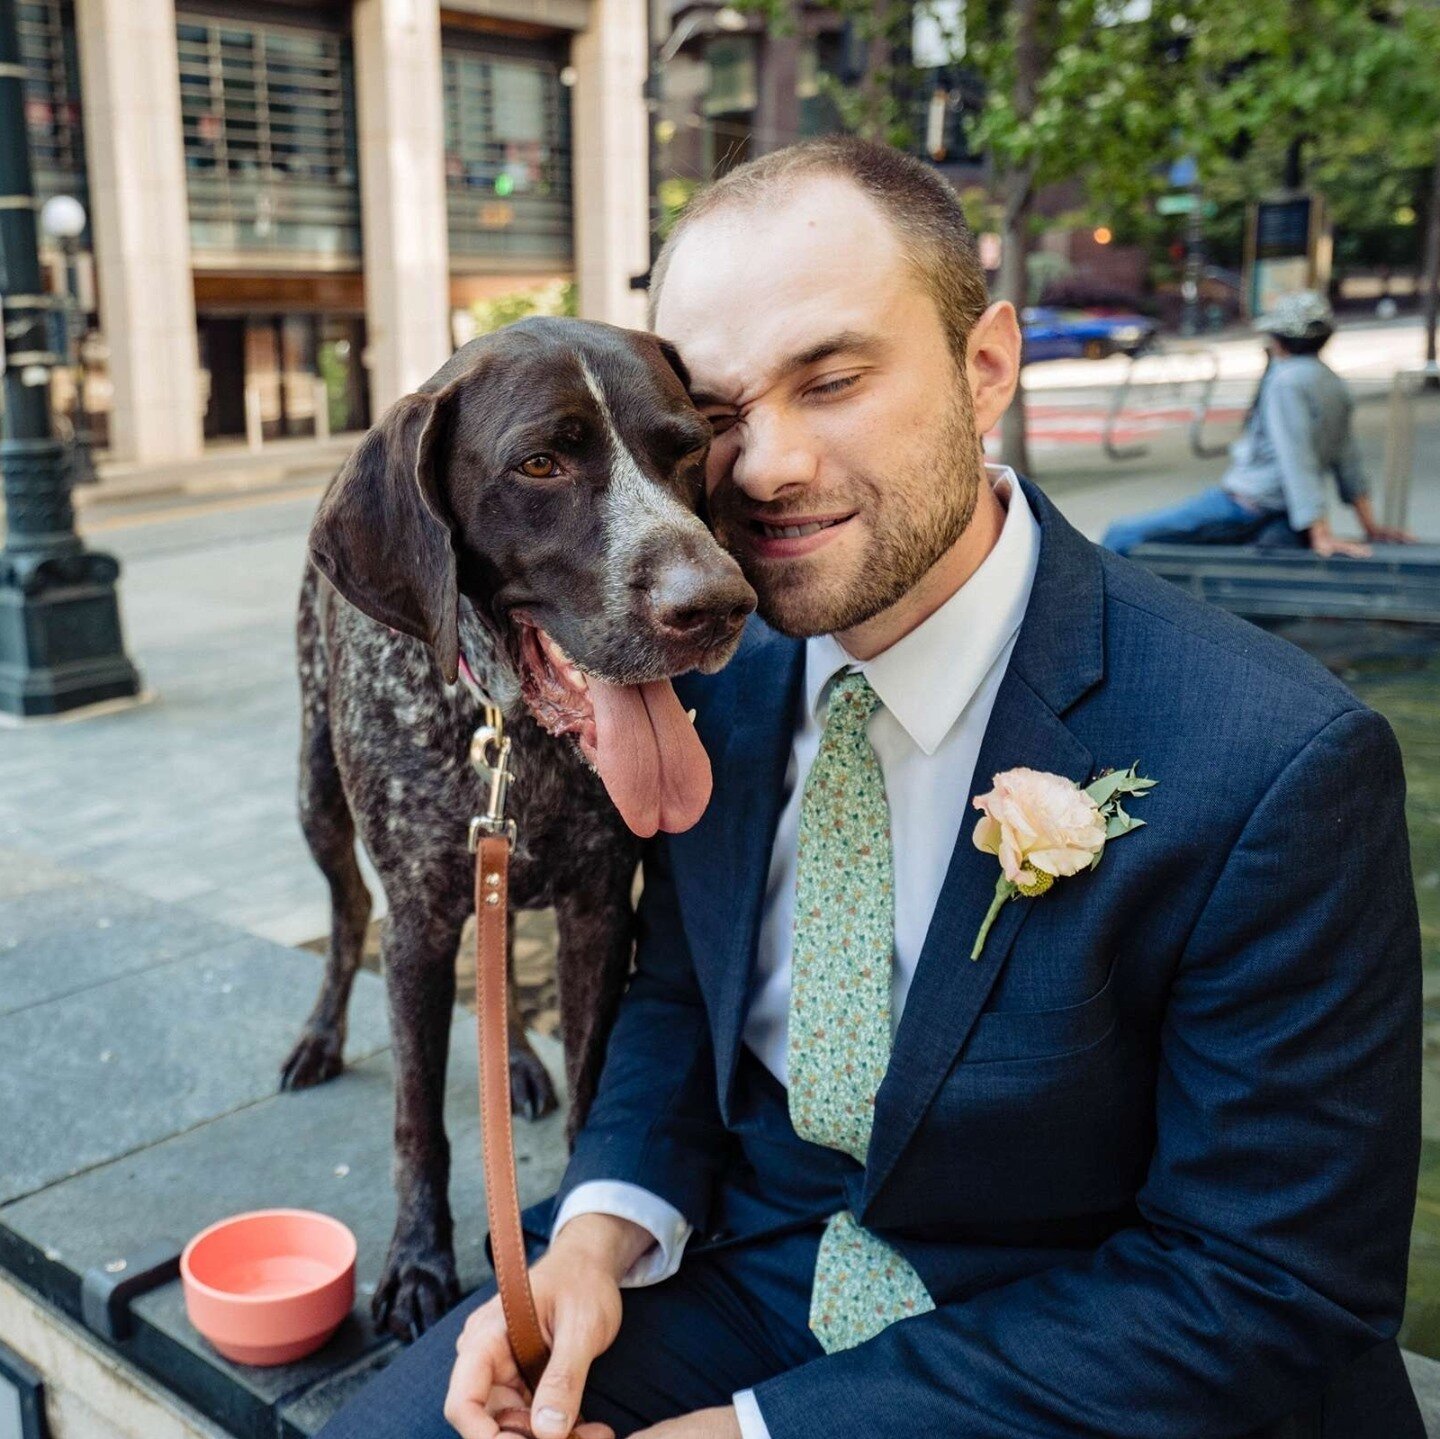 Dogs love weddings!⁠
⁠
#SeattleElopement #MicroWedding #SeattleWedding #SonyA7III #DogAtWedding #Pet